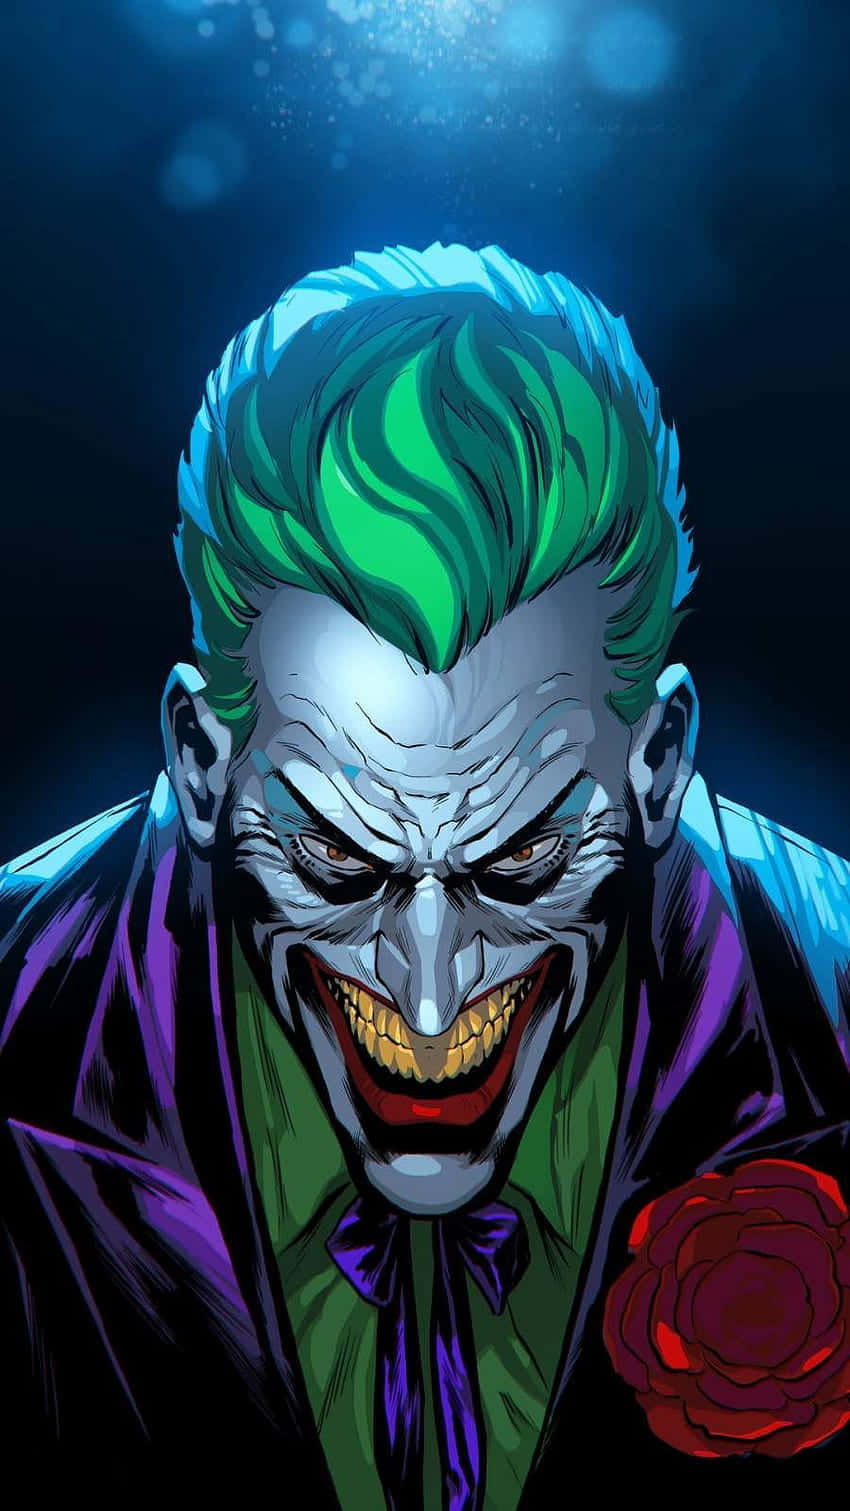 The Joker wreaks havoc on Gotham City! Wallpaper